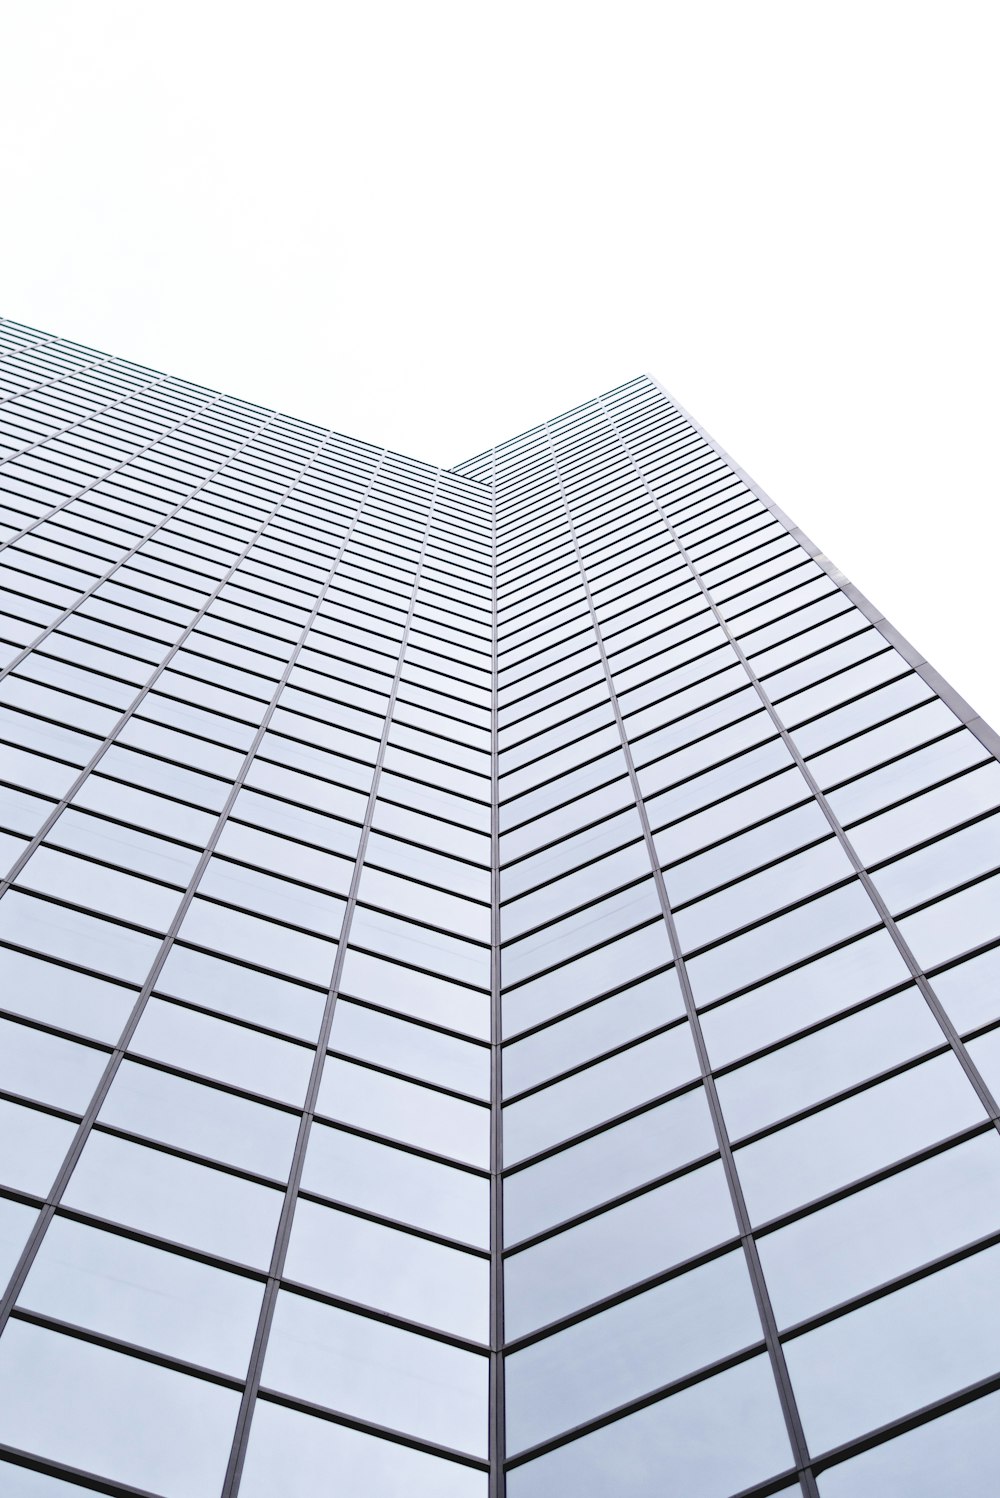 ガラス高層ビルのローアングル撮影